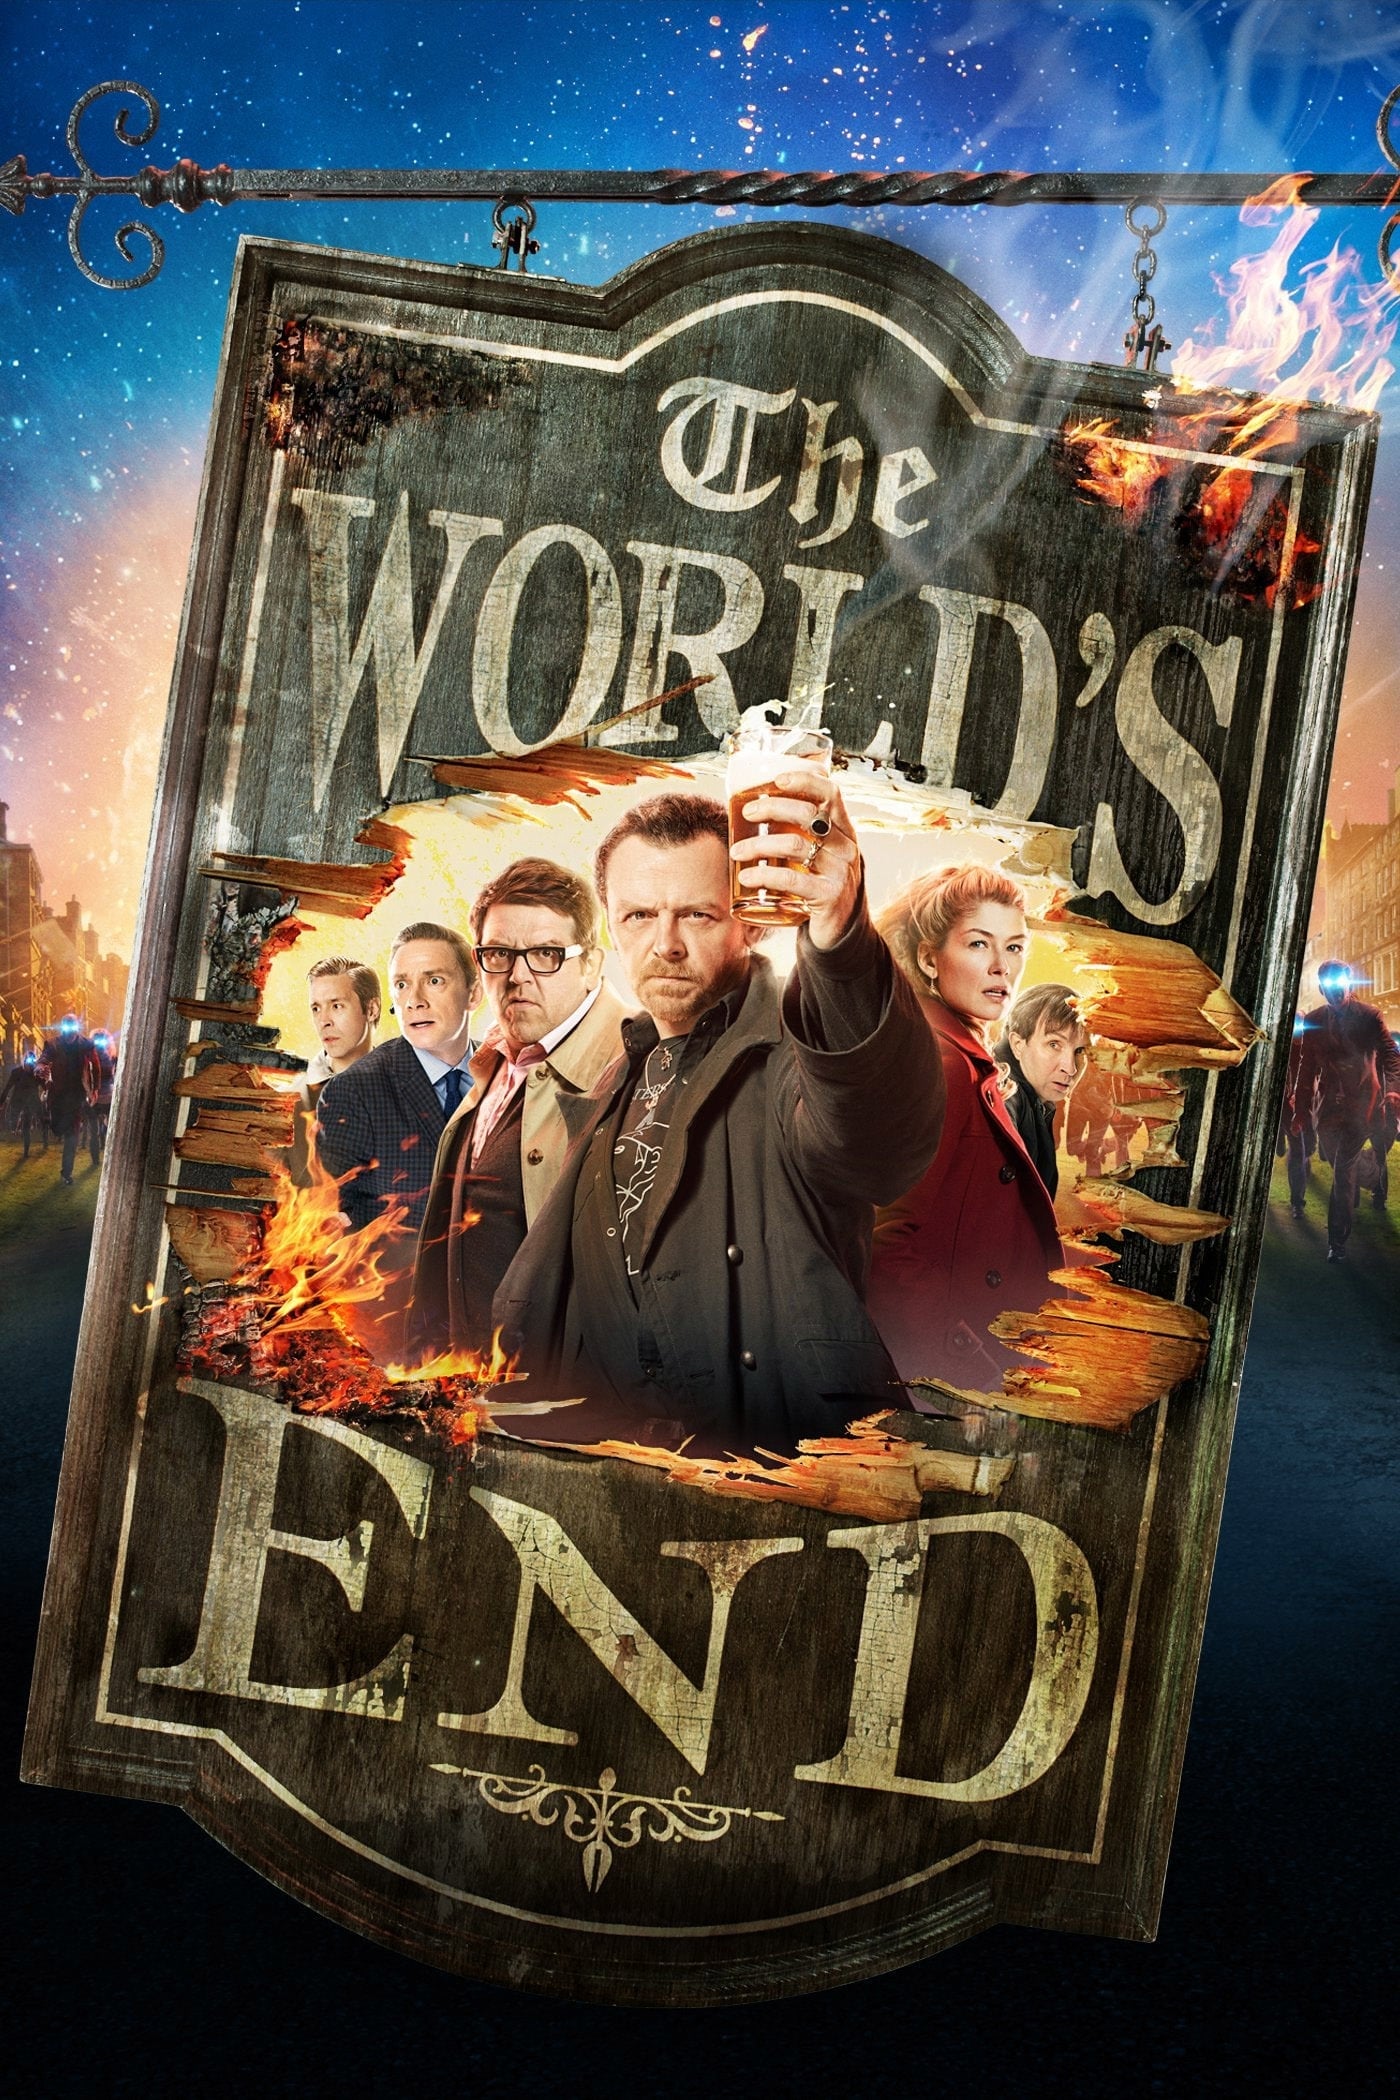 Kết Thúc Của Thế Giới (The World's End) [2013]